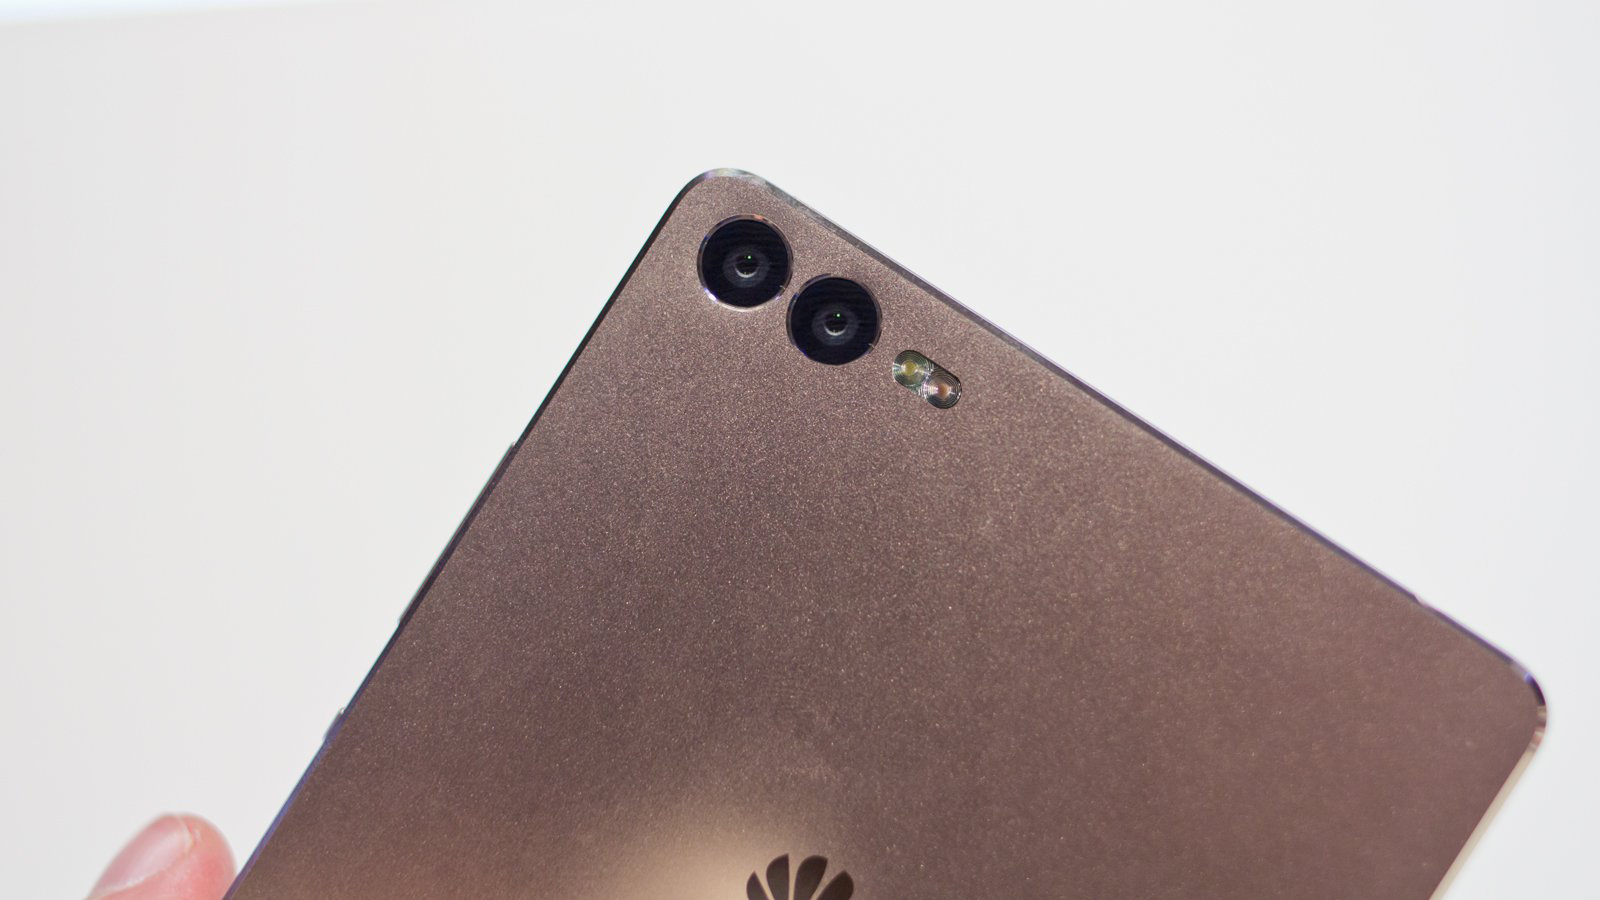 Huawei P9 Pics leaked